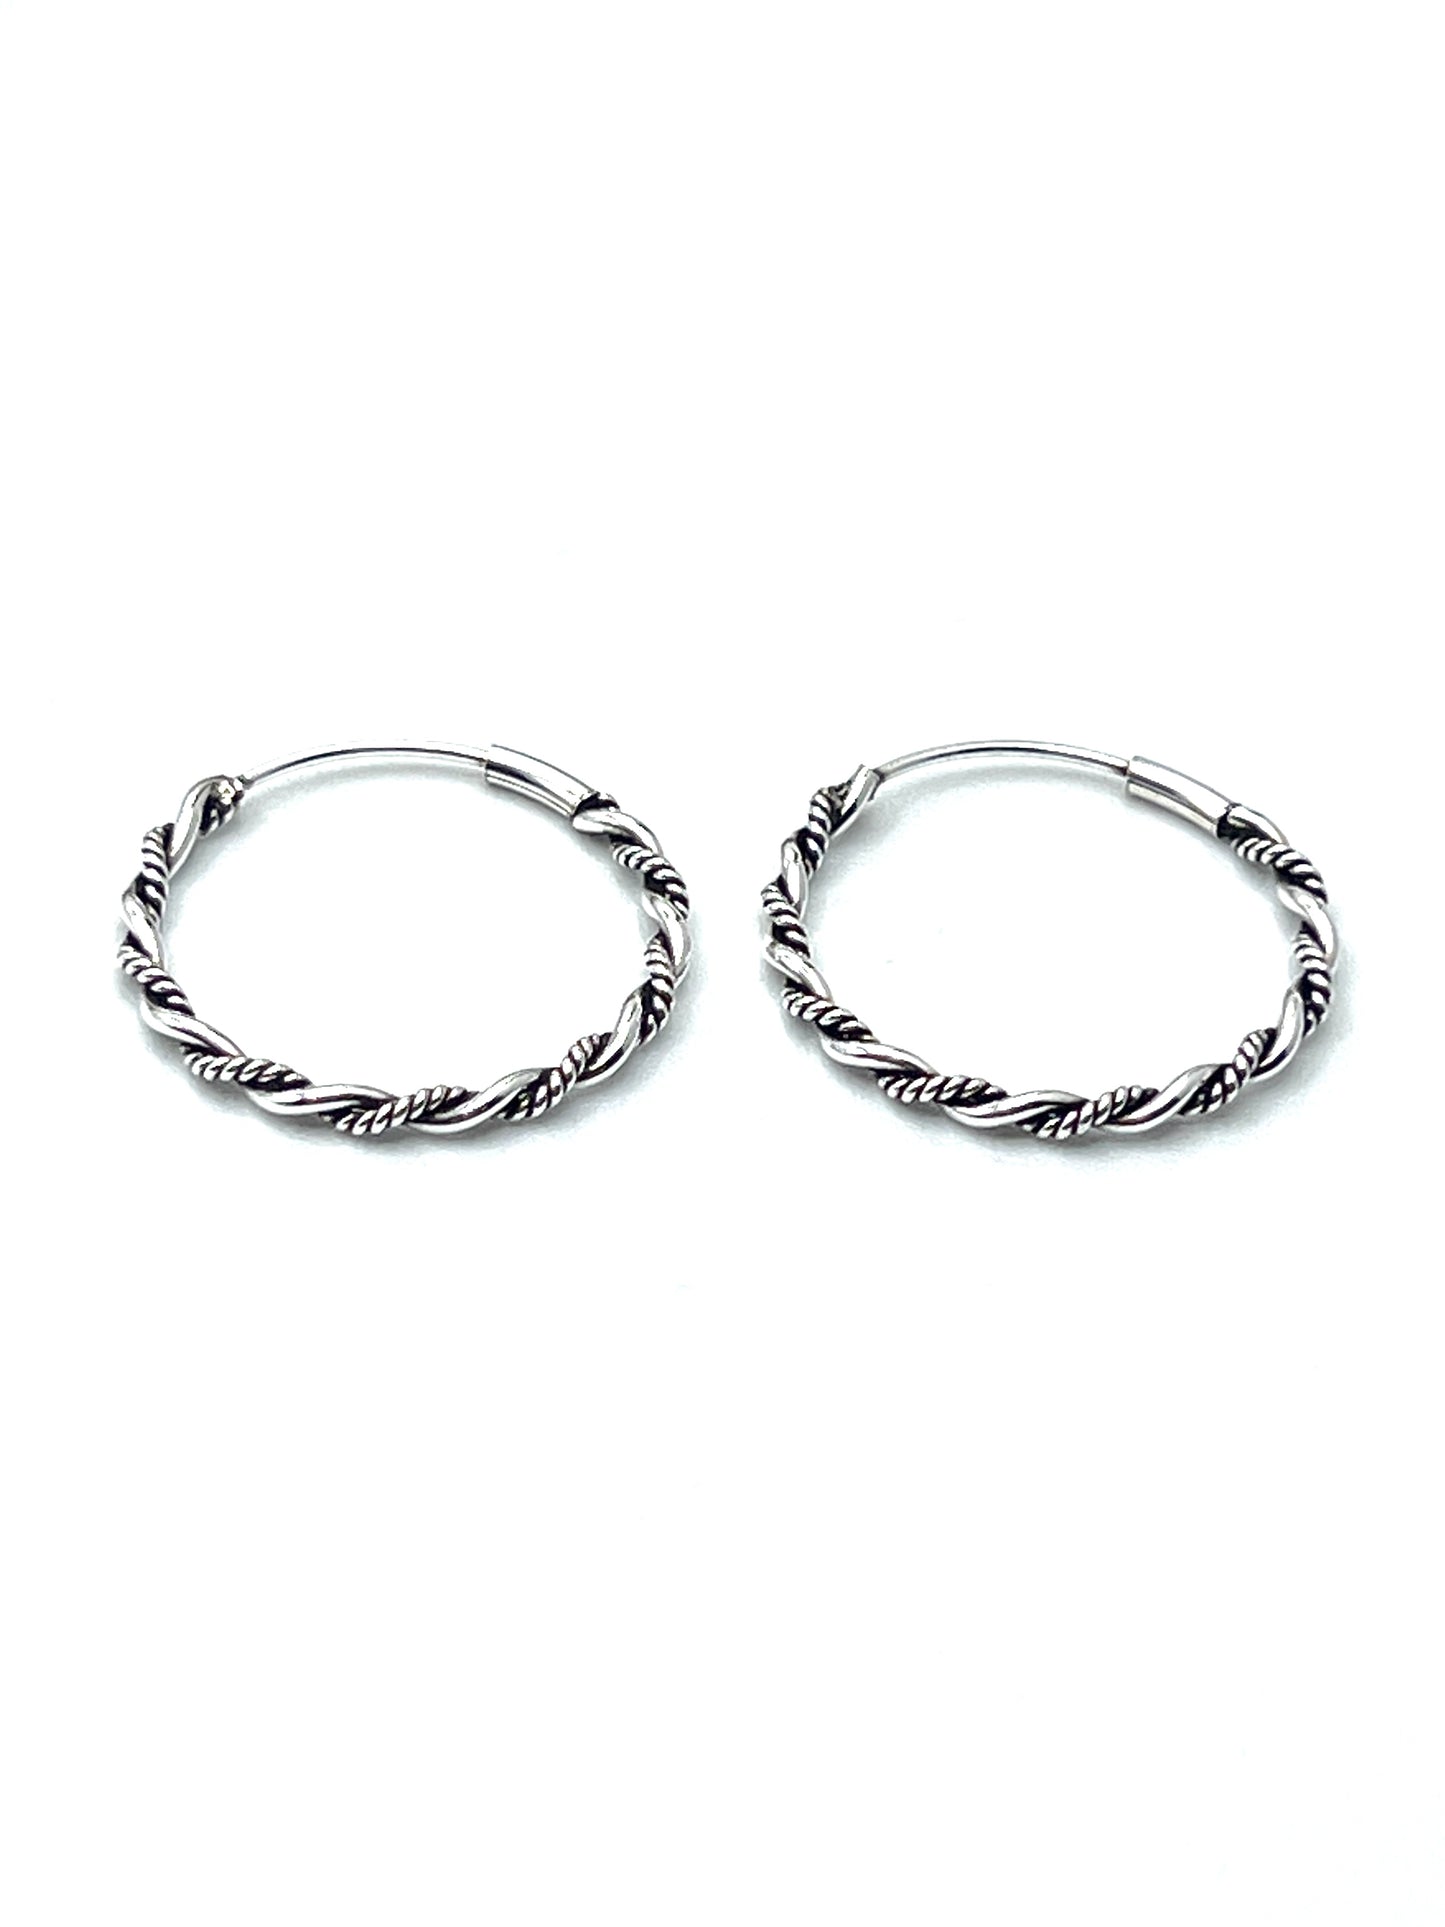 Oxidized Sterling Silver Twist Hoop Earrings